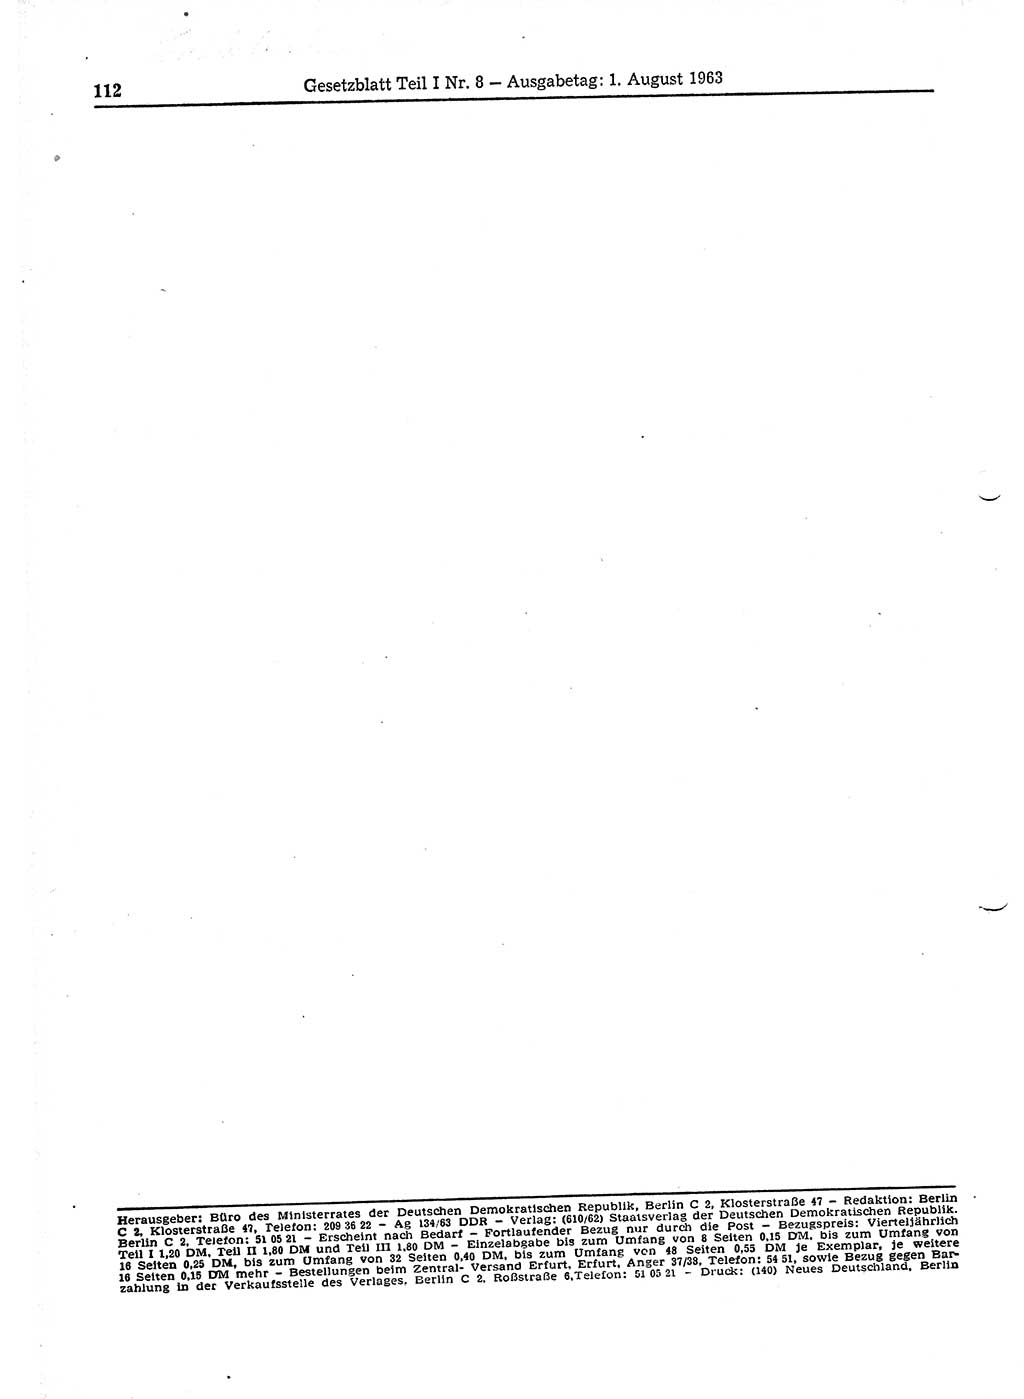 Gesetzblatt (GBl.) der Deutschen Demokratischen Republik (DDR) Teil Ⅰ 1963, Seite 112 (GBl. DDR Ⅰ 1963, S. 112)